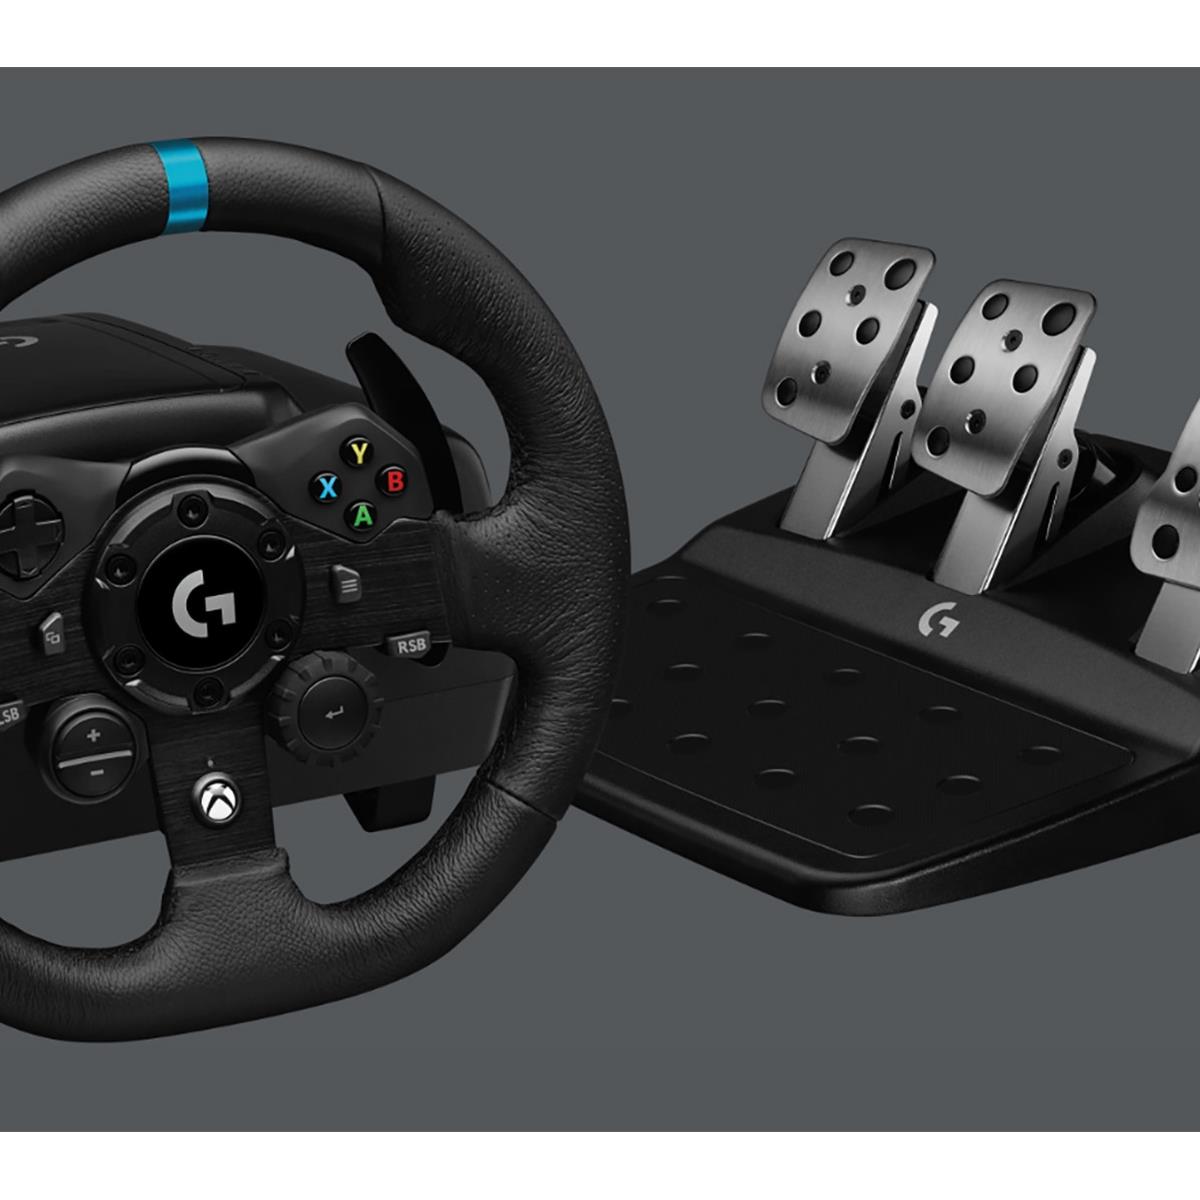 Logitech Reveals New Next-Gen Ready Racing Wheel, the G923